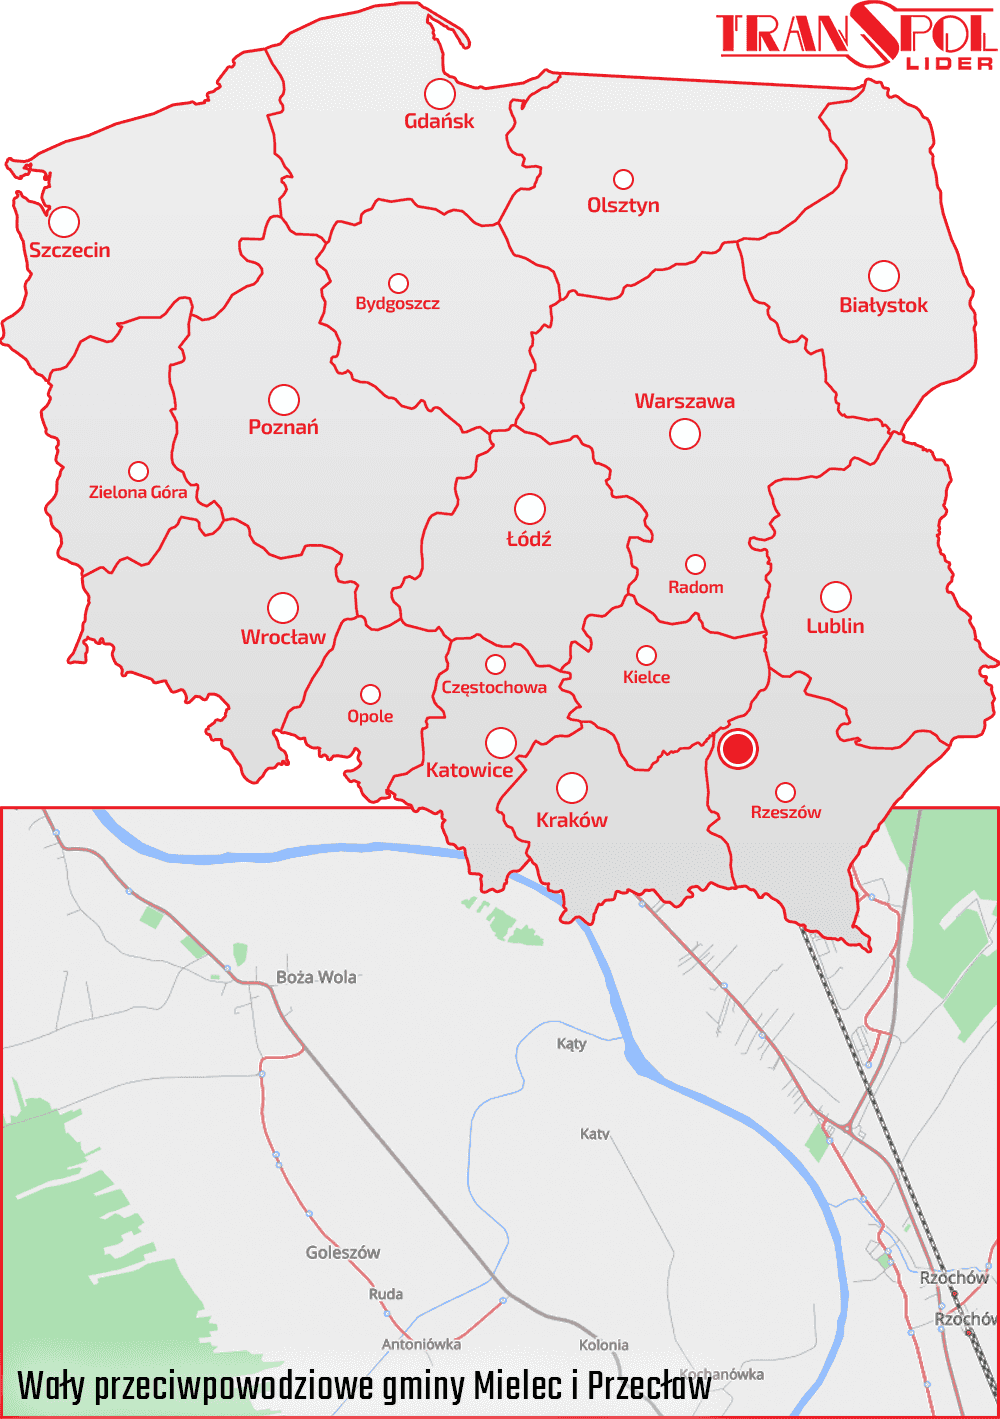 Wały przeciwpowodzowe gminy Mielec i Przecław